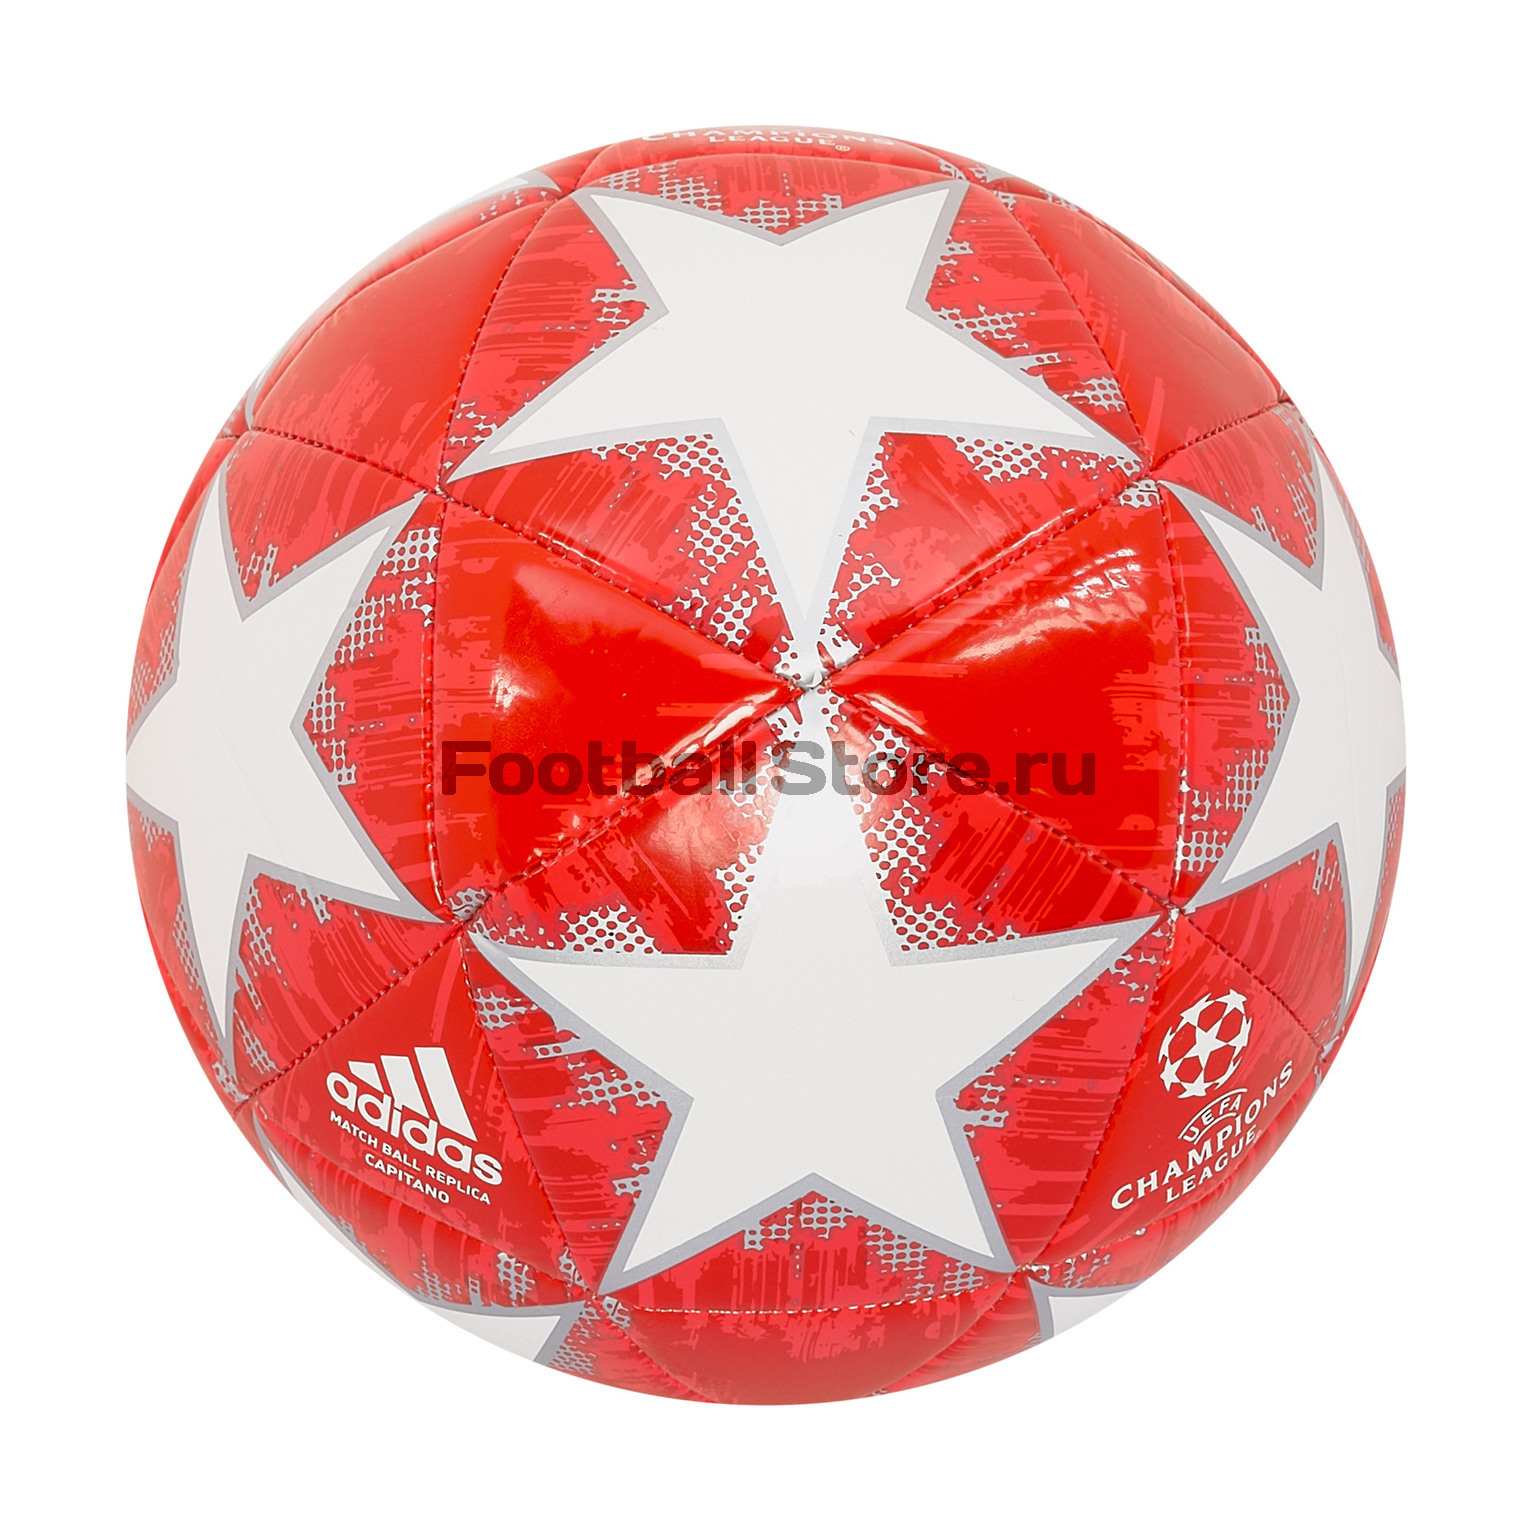 Футбольный мяч Adidas Real Madrid Capitano CW4140 купить в интернет магазине footballstore, цена,